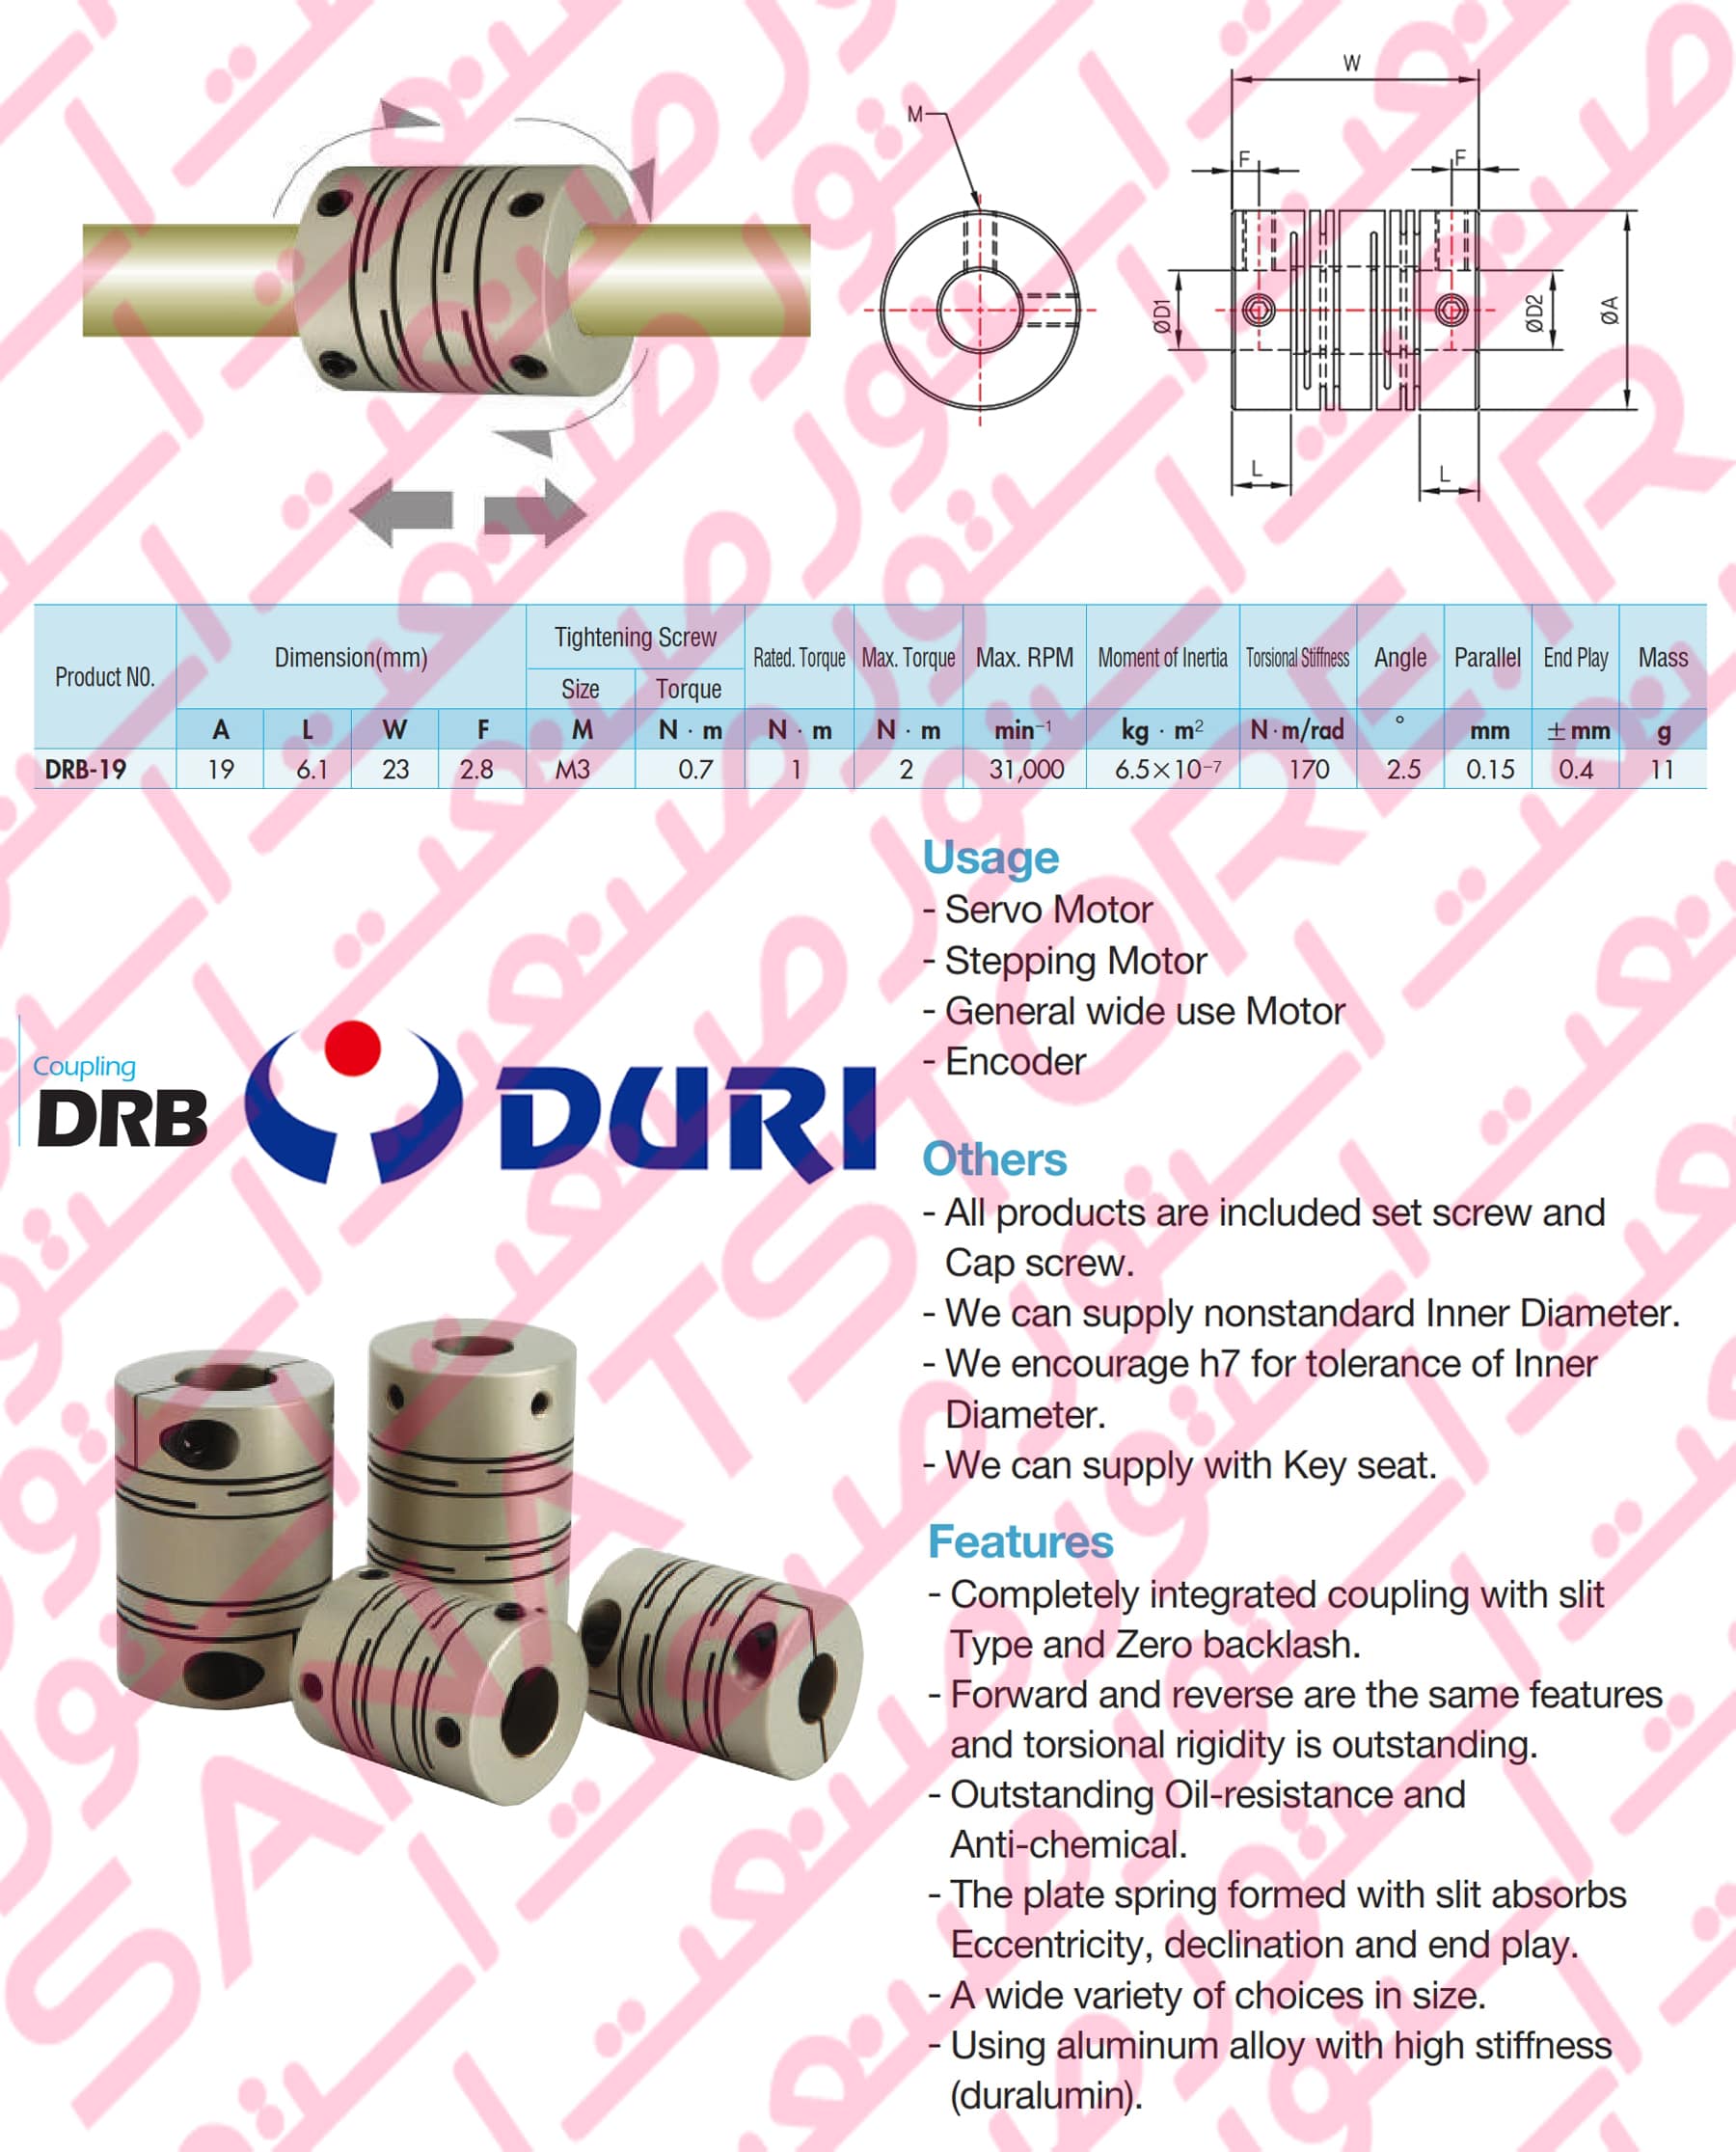 Aluminium Flexible DURI Coupling DRB-19 8-8